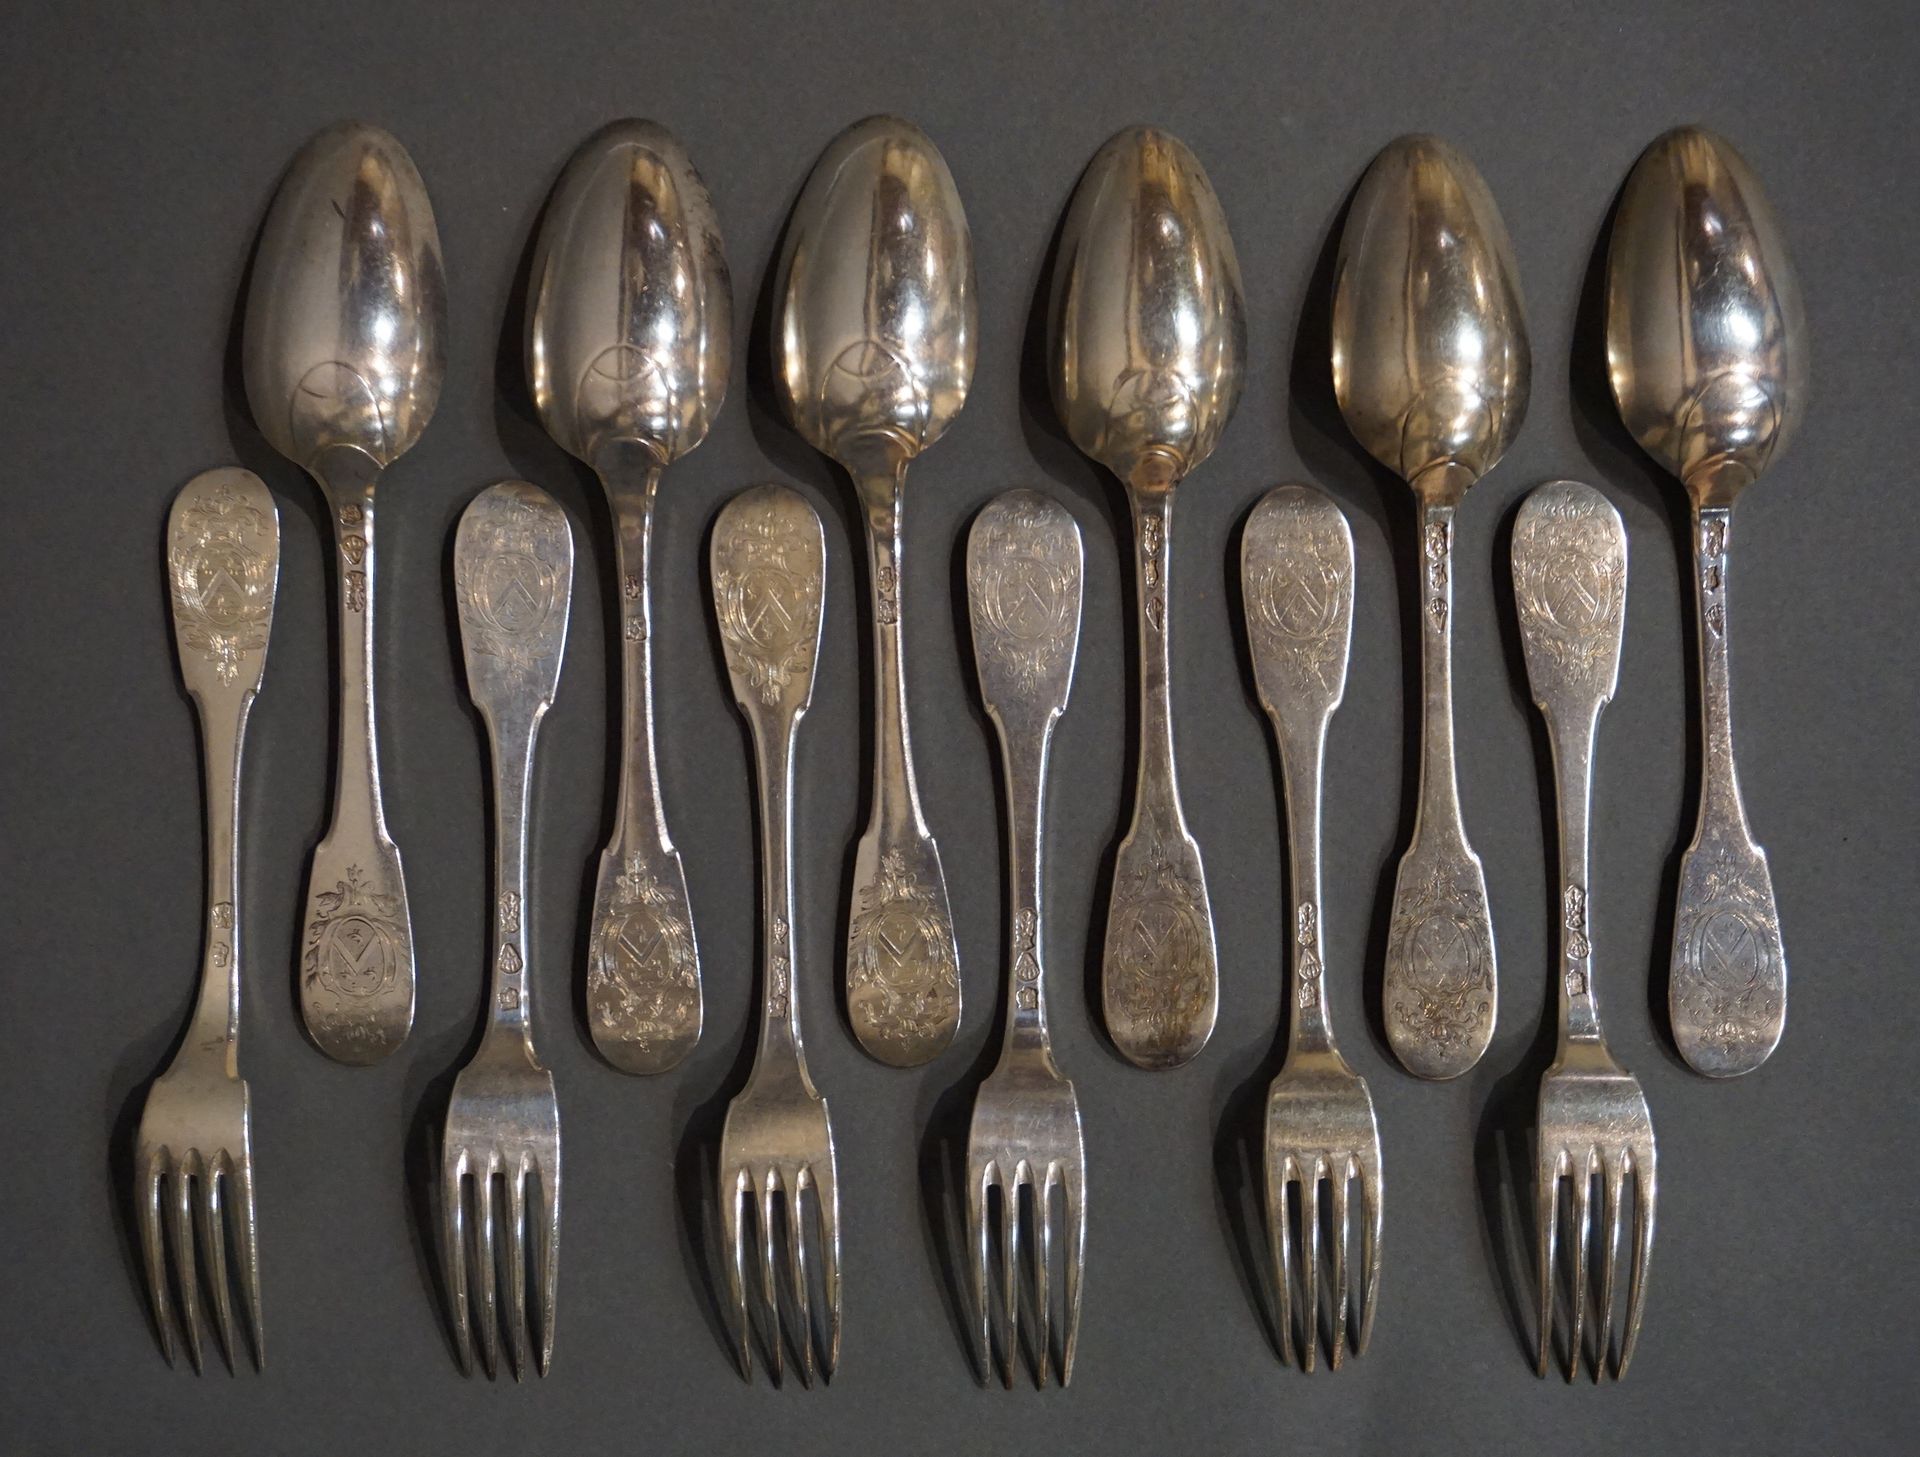 COUVERTS 六把大勺子和六把大叉子，银色的。18世纪 (902 grs)